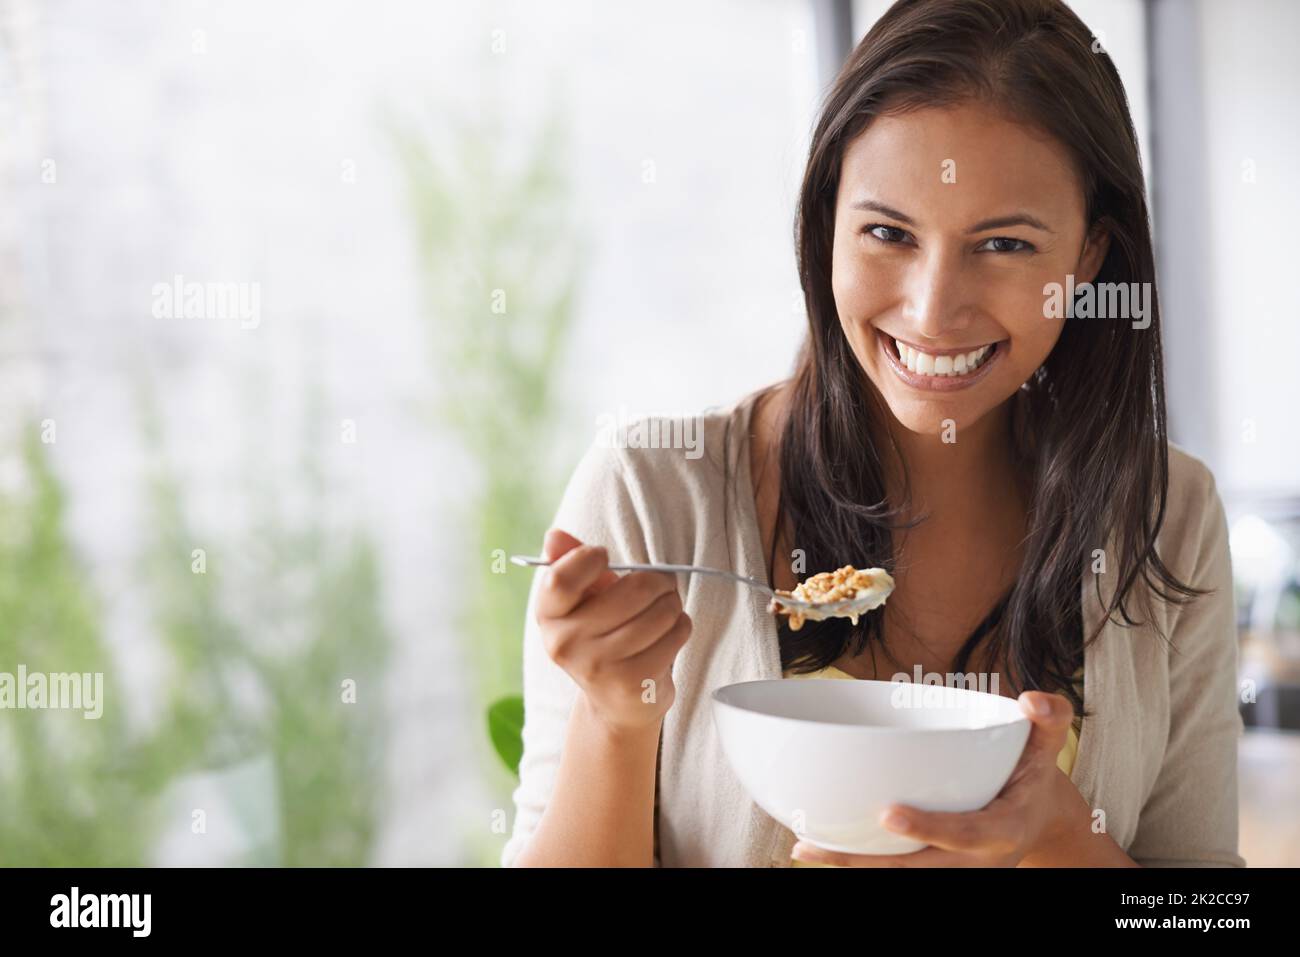 J'aime le goût frais de ses céréales du matin. Une jolie jeune femme qui apprécie une salade saine. Banque D'Images